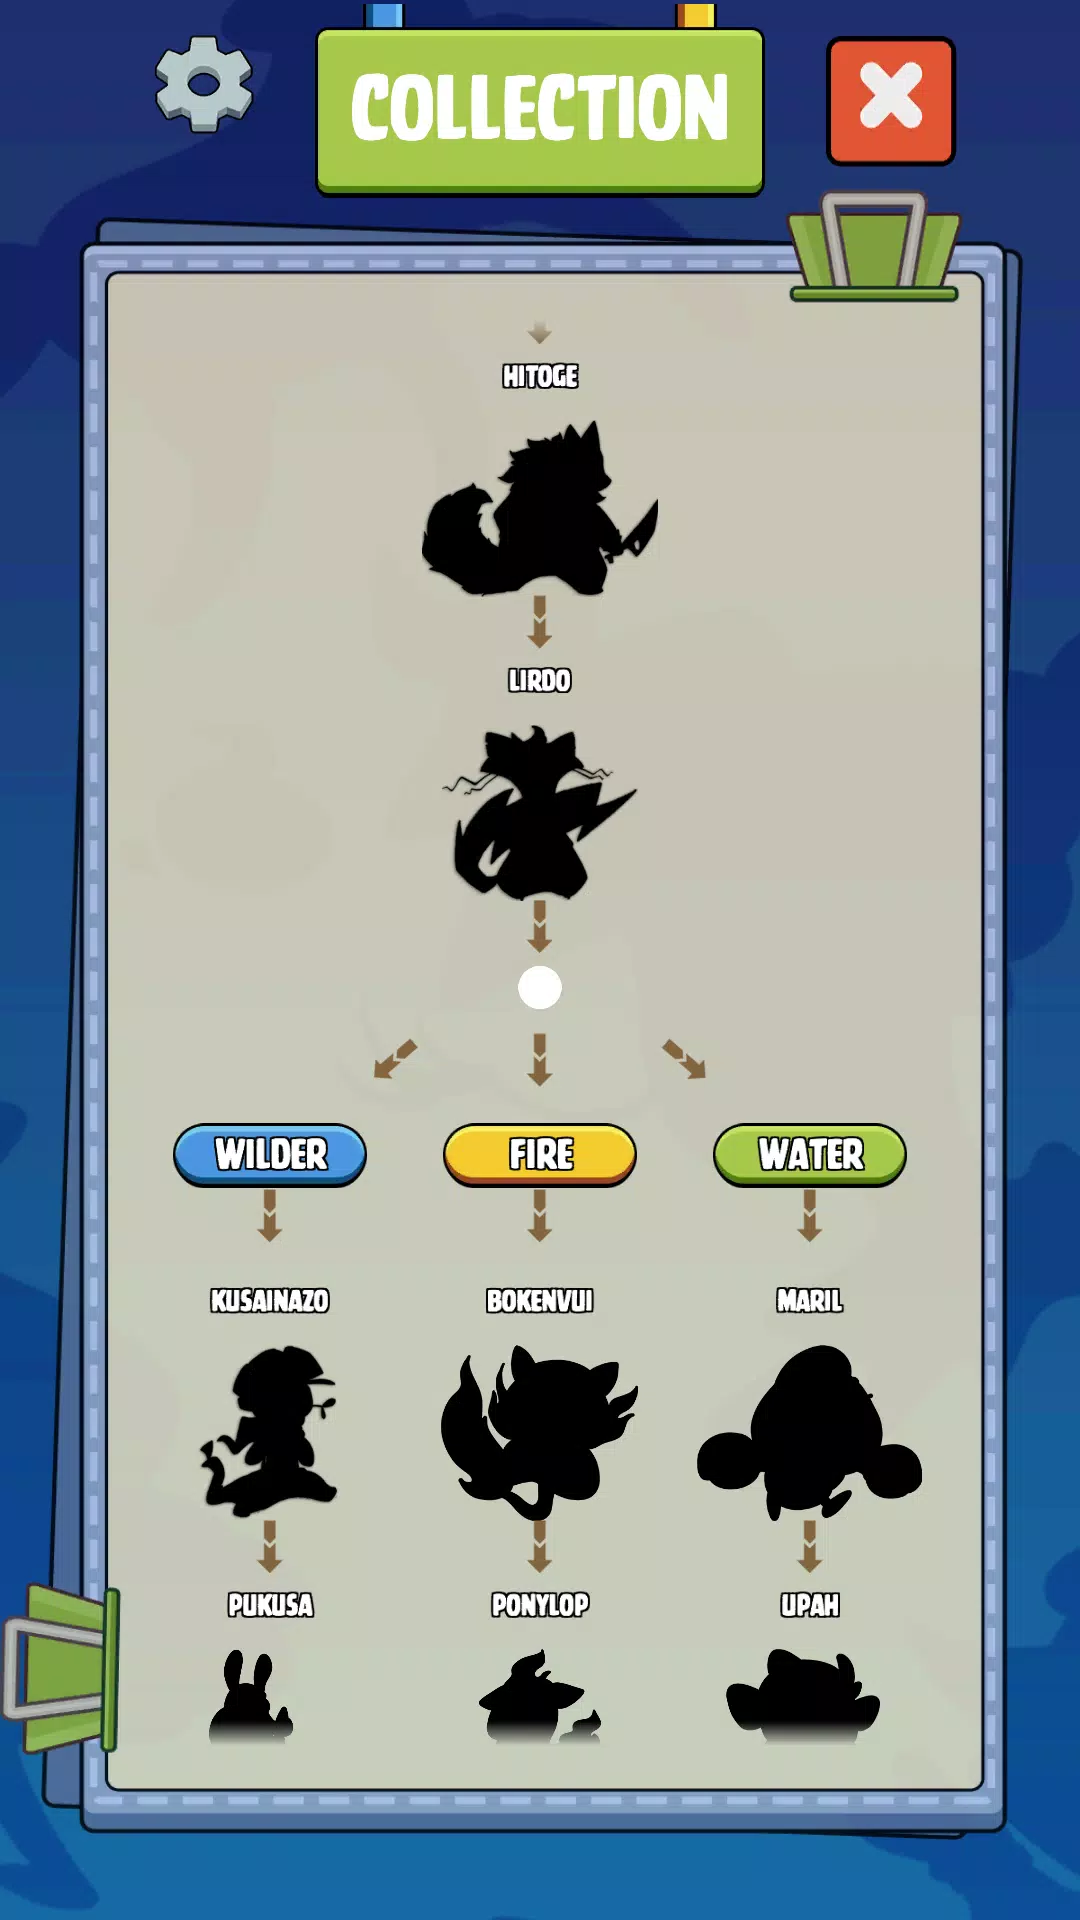 Merge Cats Jogo Idle Monsters versão móvel andróide iOS apk baixar  gratuitamente-TapTap